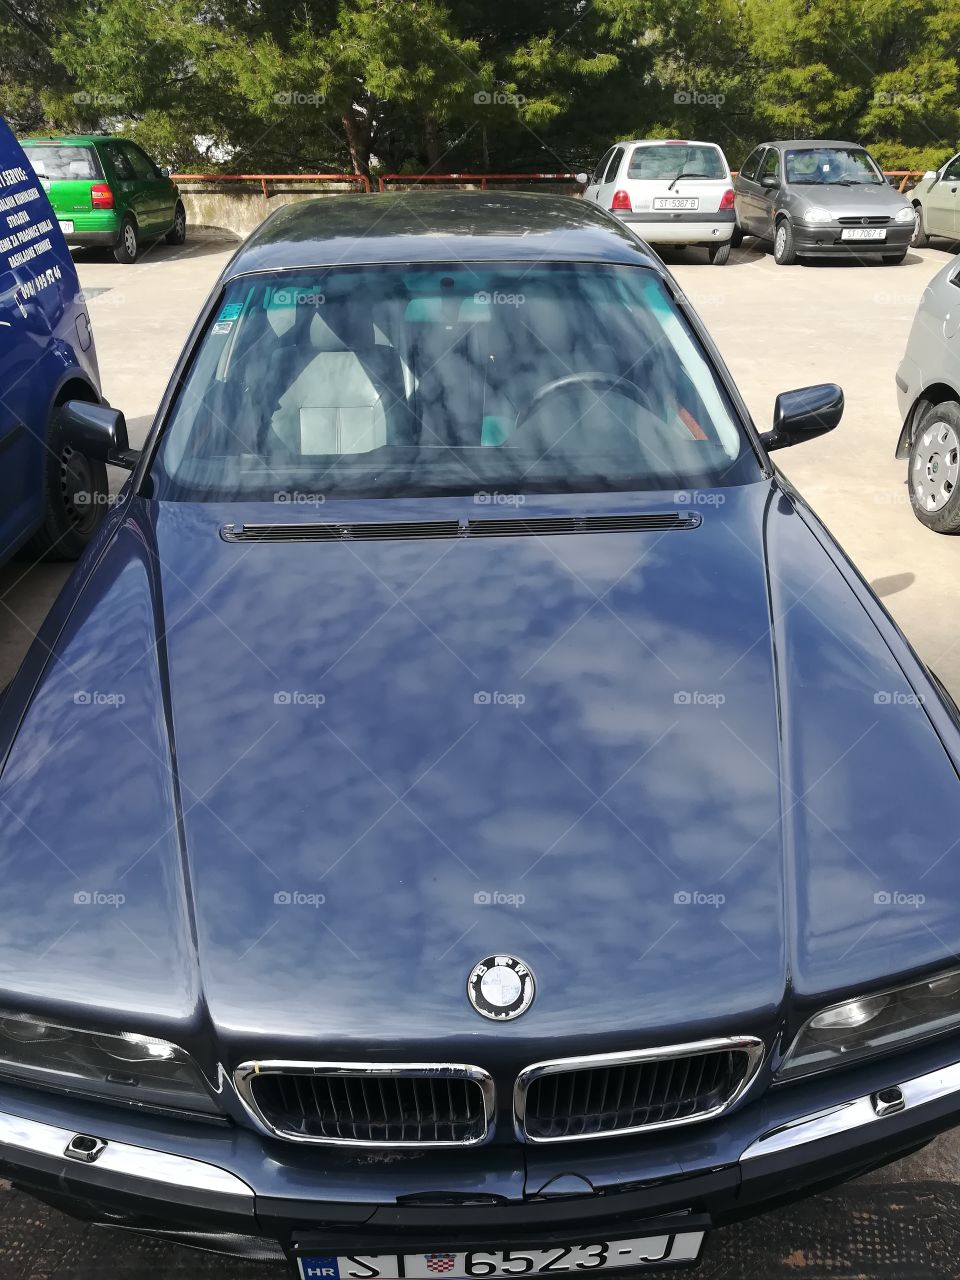 my BMW e38 v8